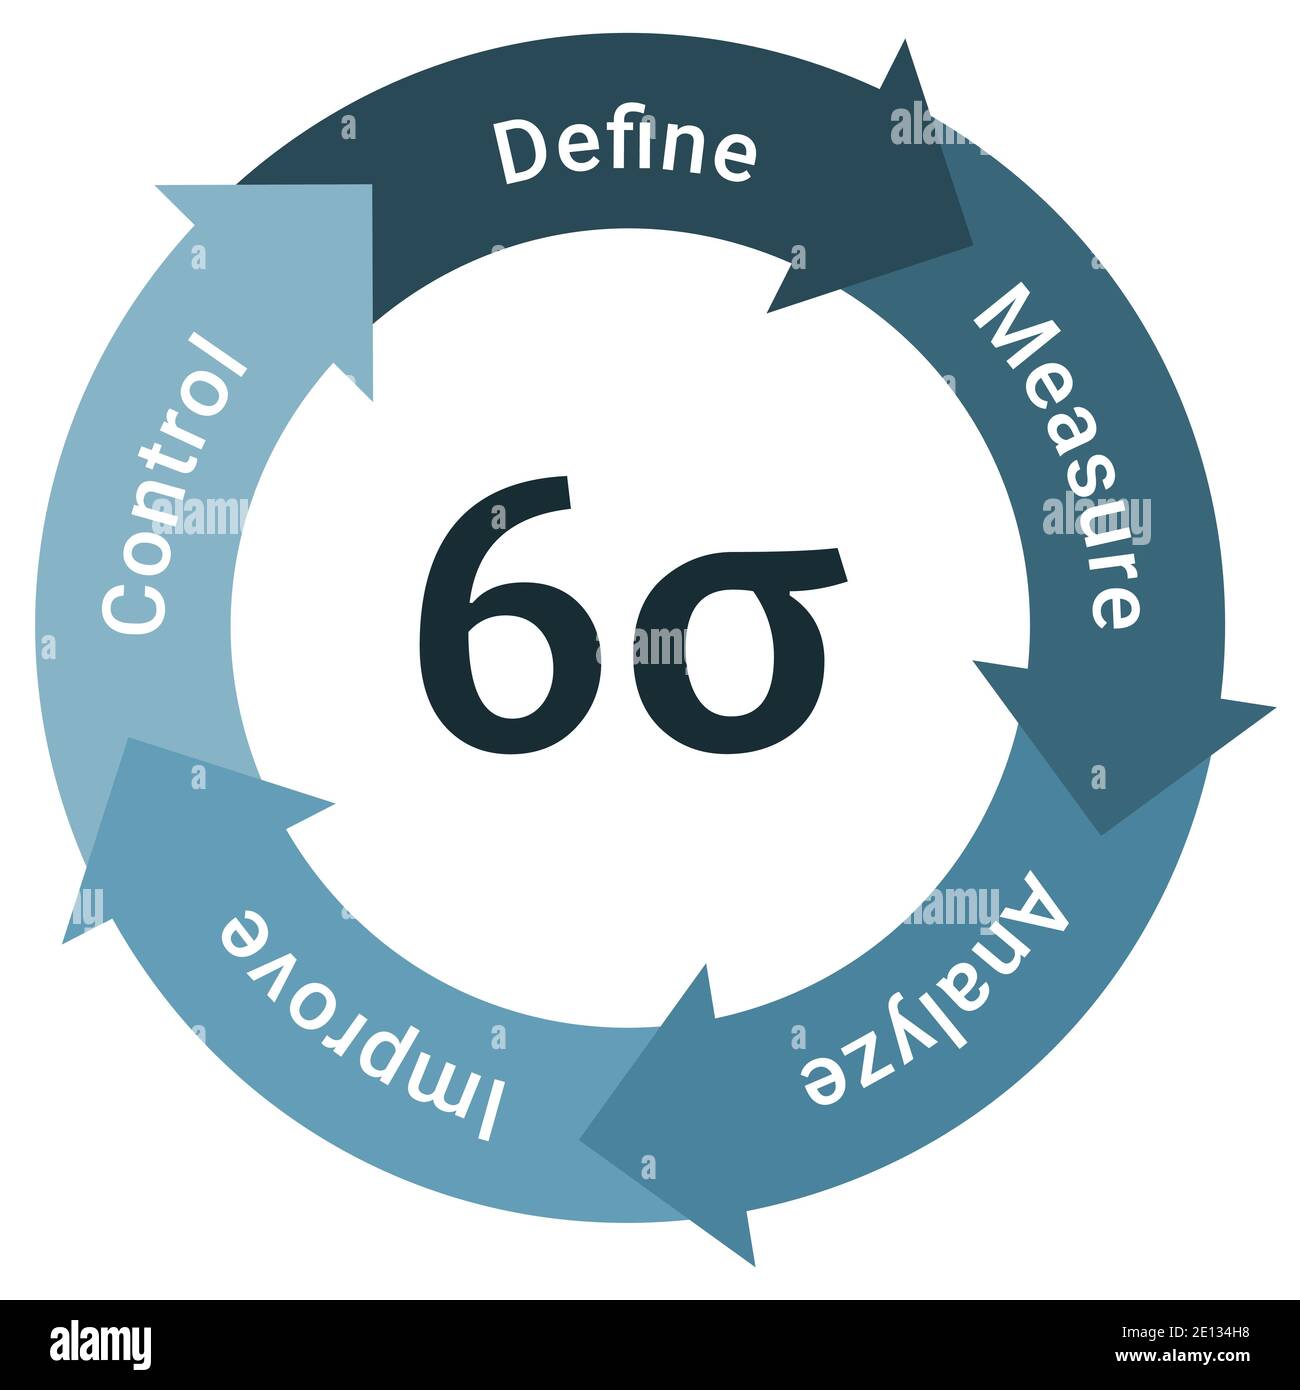 Six Sigma Methodik Lebenszyklus Diagramm Schema Infografiken mit definieren, messen, analysieren, verbessern und kontrollieren Stock Vektor